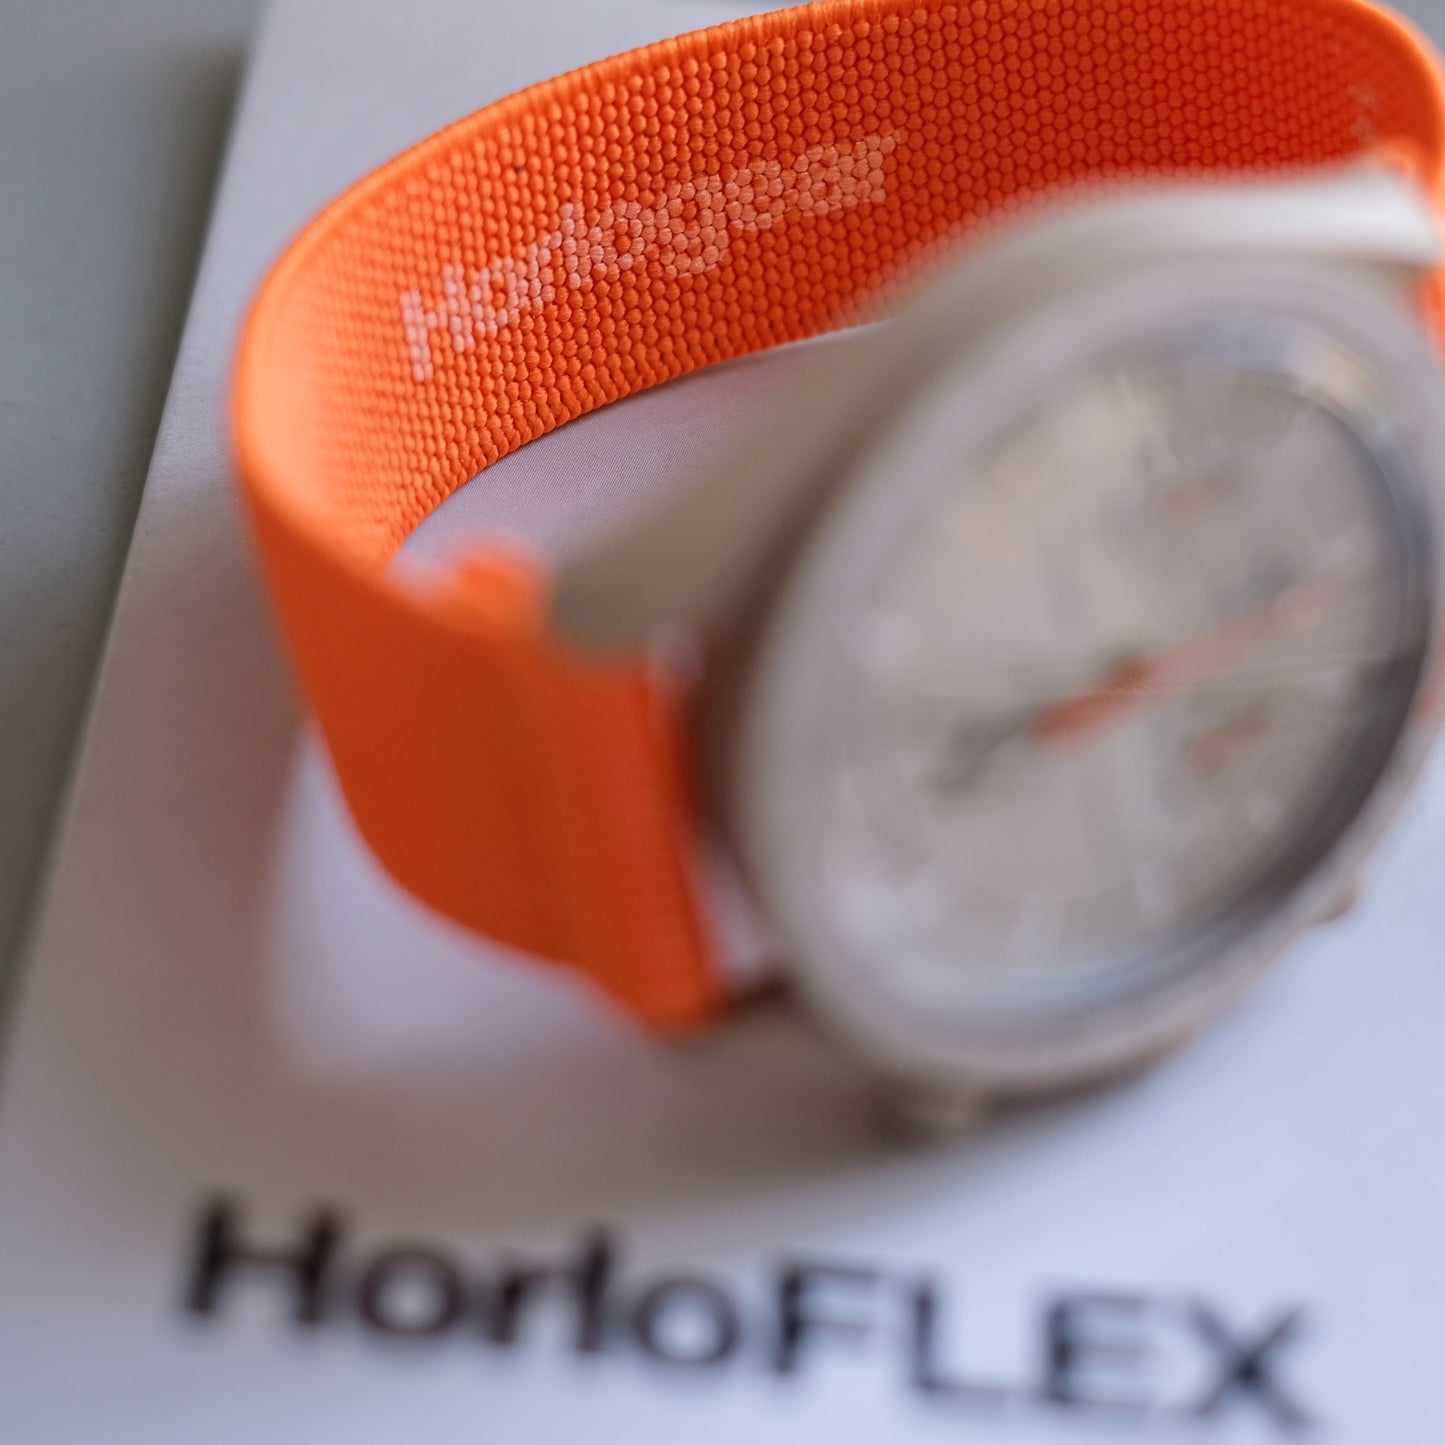 HorloFLEX-Band (exotisches Orange)